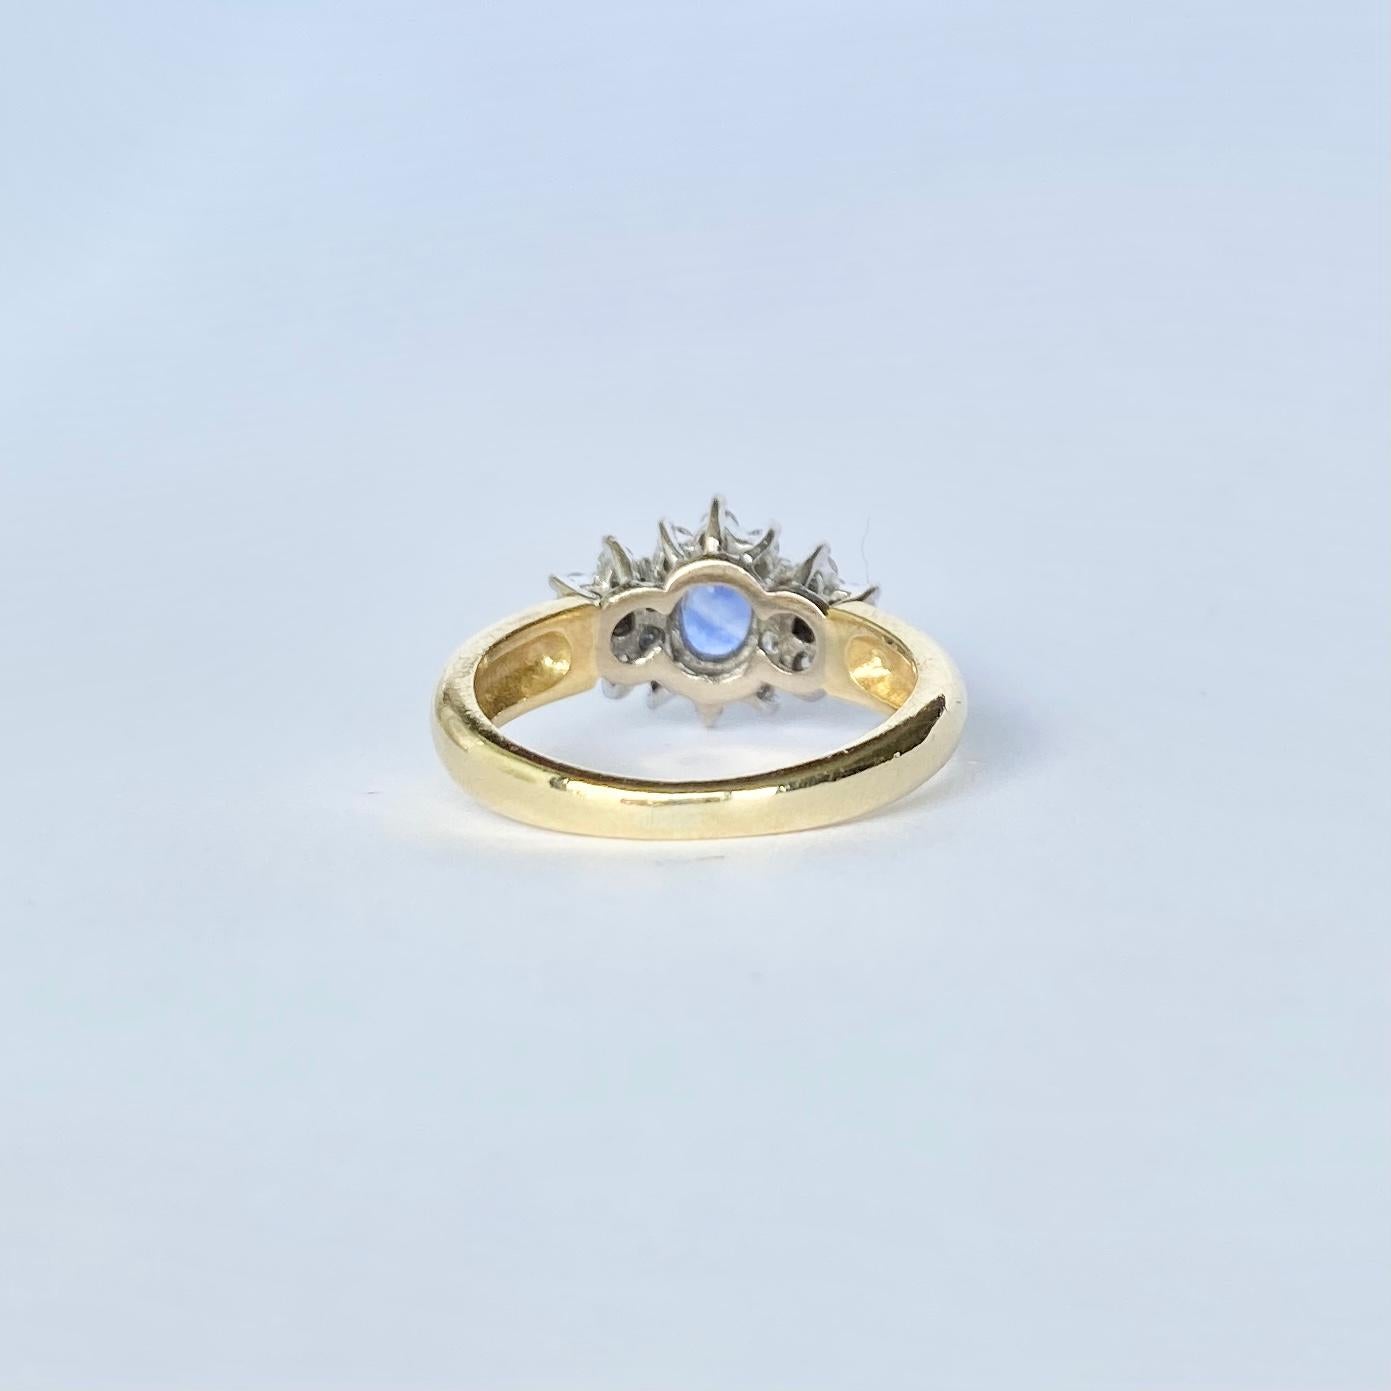 Dieses Schmuckstück trägt einen blassblauen Saphir in der Mitte von kleinen, funkelnden Diamanten. Der Saphir misst 45 Karat und die Diamanten insgesamt 20 Karat. Vollständig gestempelt London 1990.

Ringgröße: G 1/2 oder 3 1/2 

Gewicht: 3,8 g